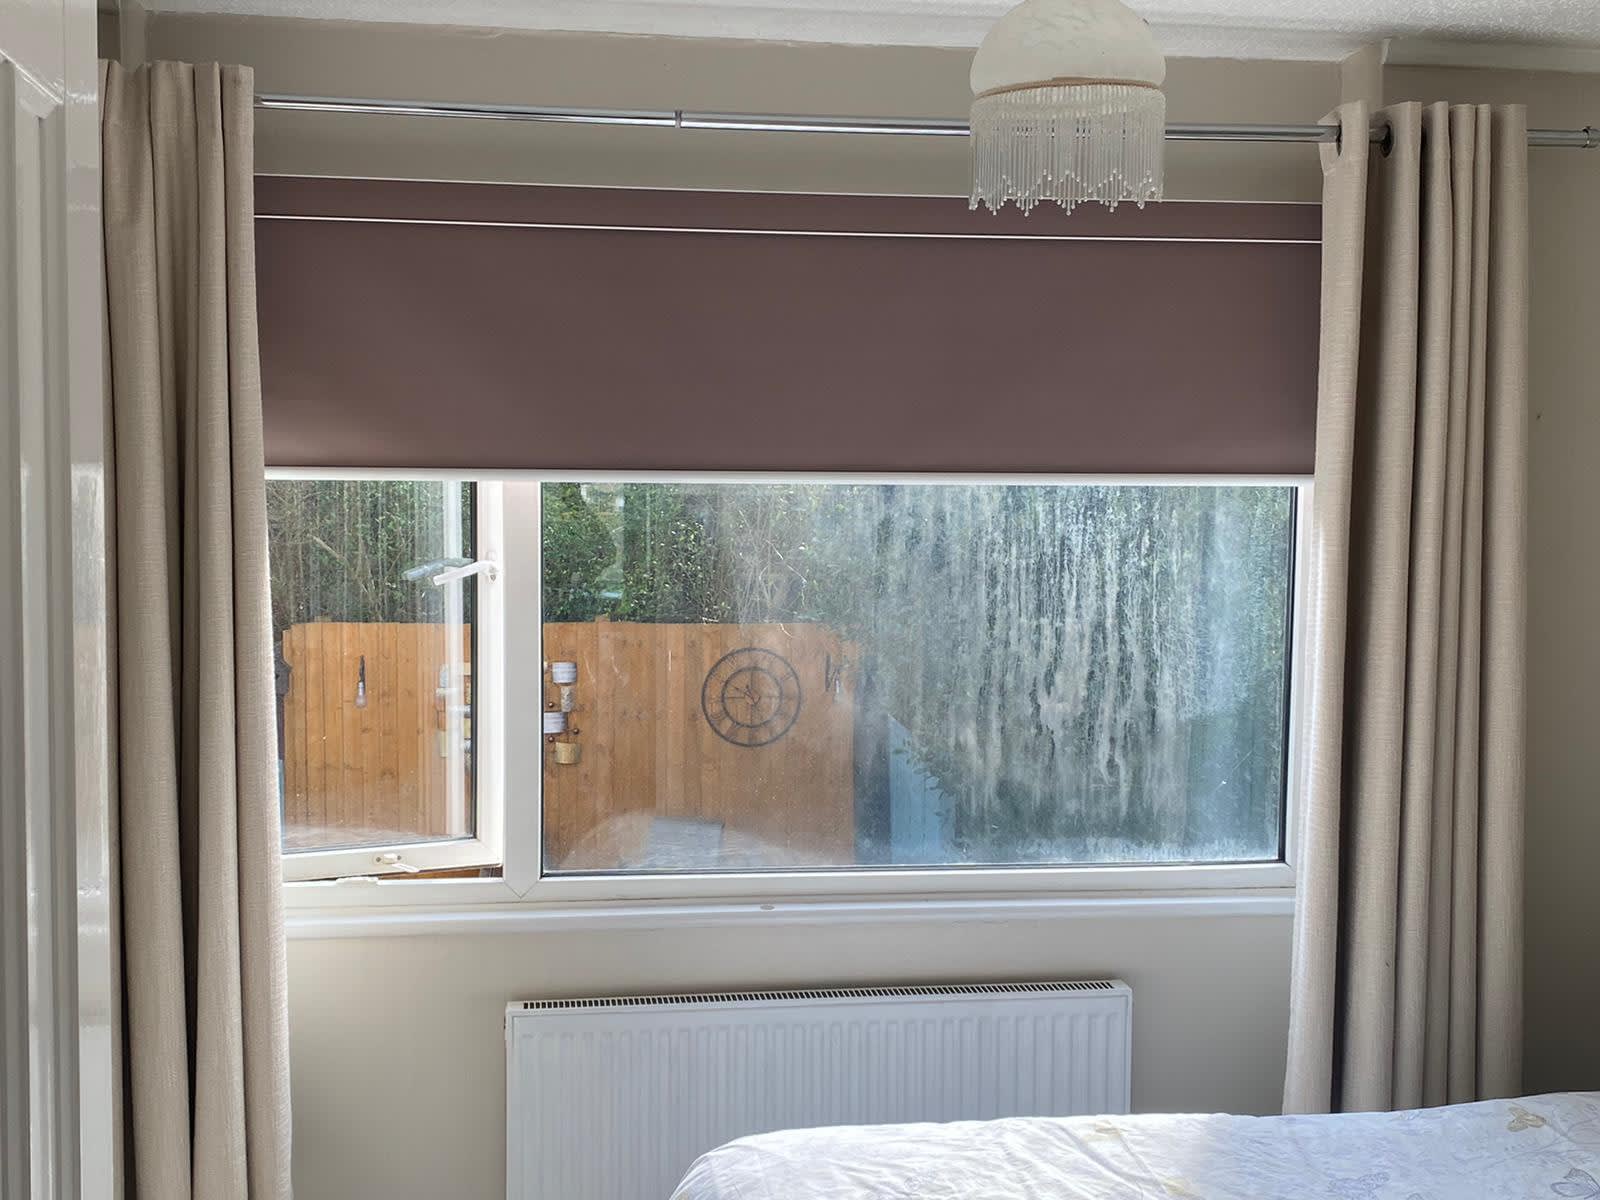 Surrey Blind & Curtain Co Ltd Croydon 01689 843669